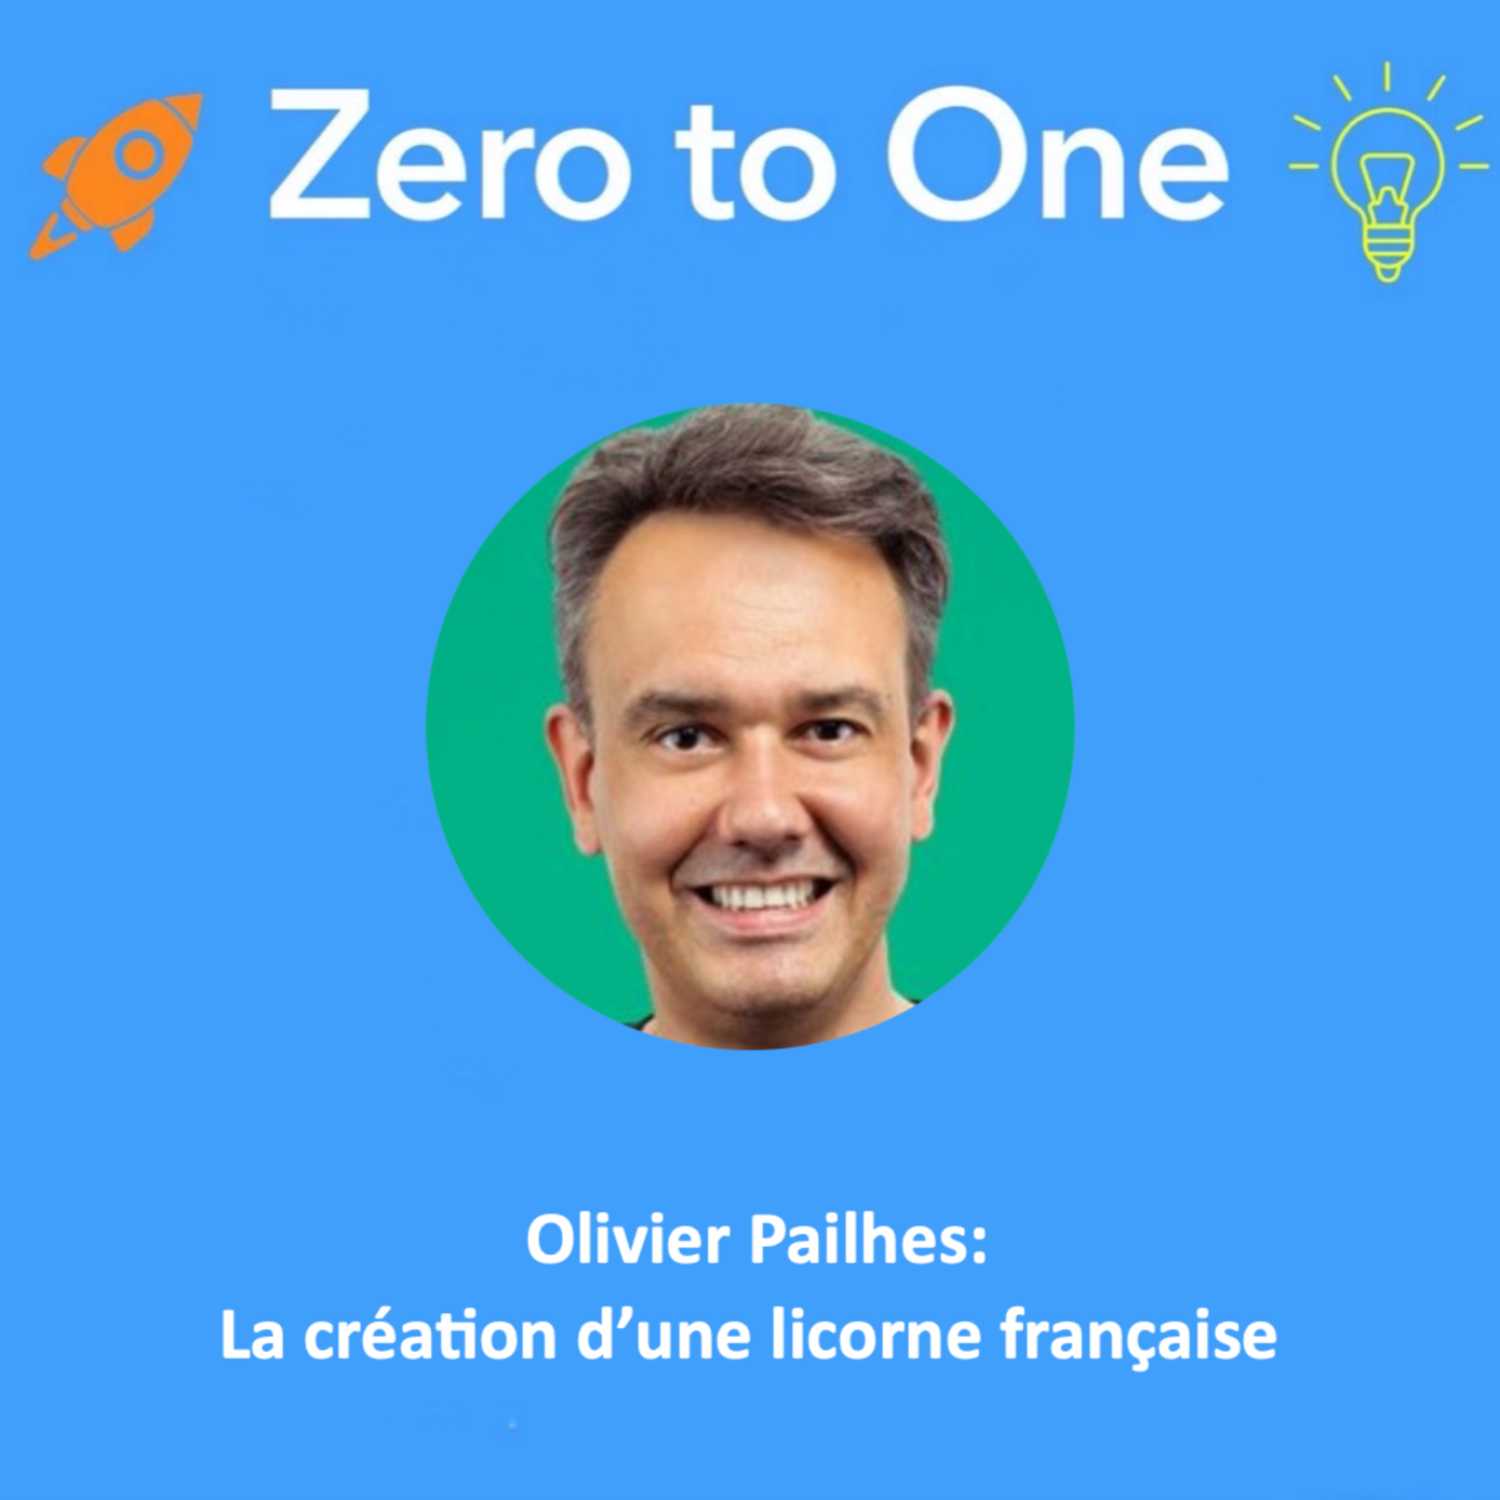 Olivier Pailhes: La création d’une licorne française 🦄